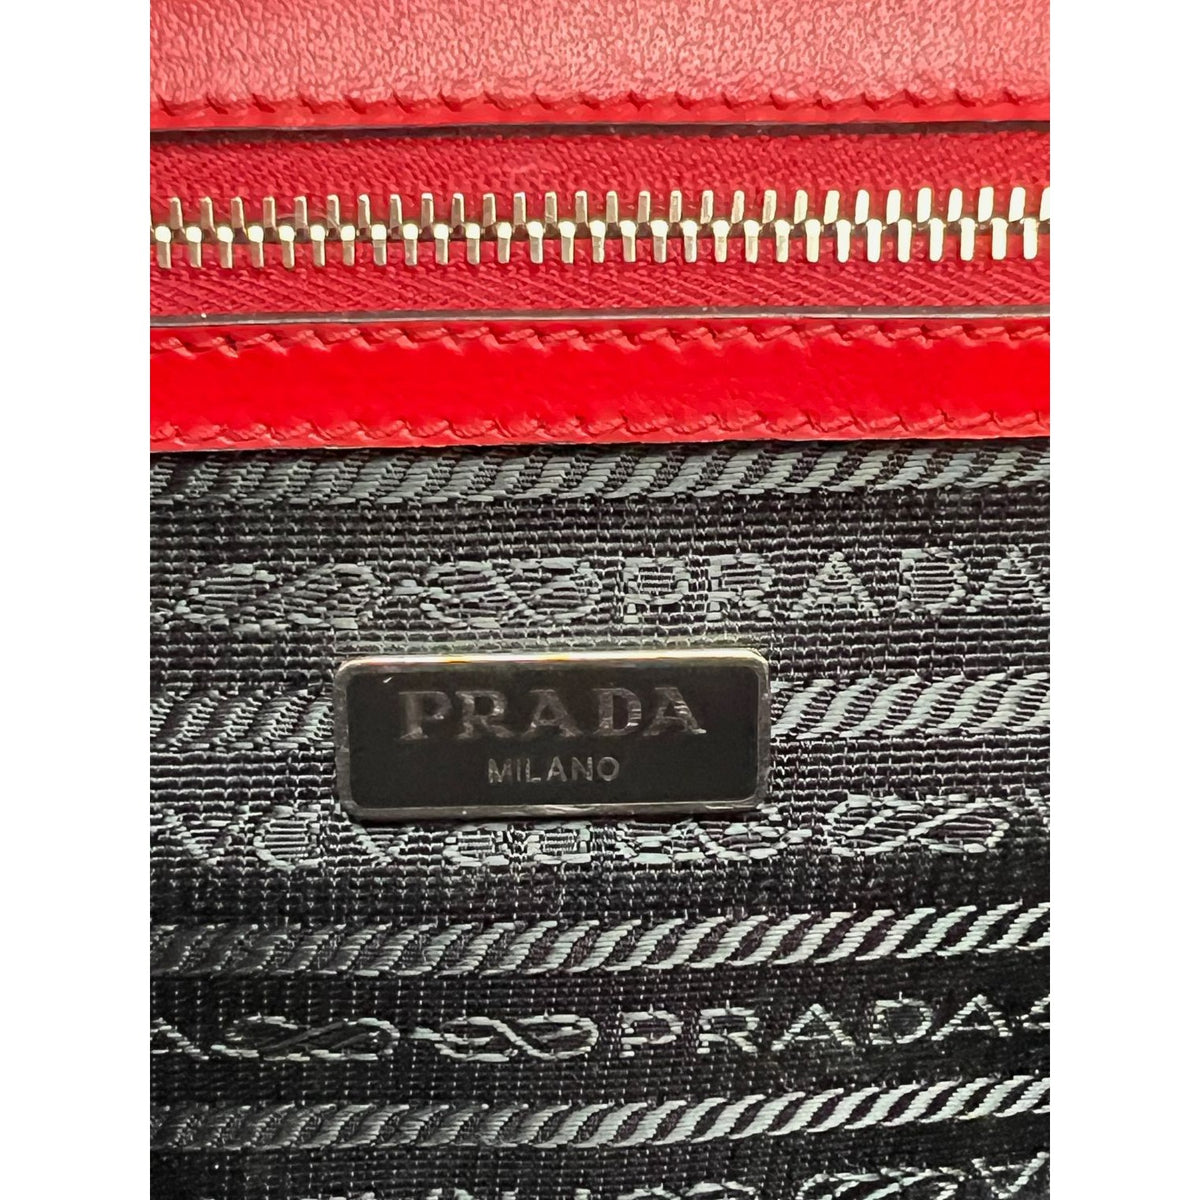 prada handbags authentic leather - Gem